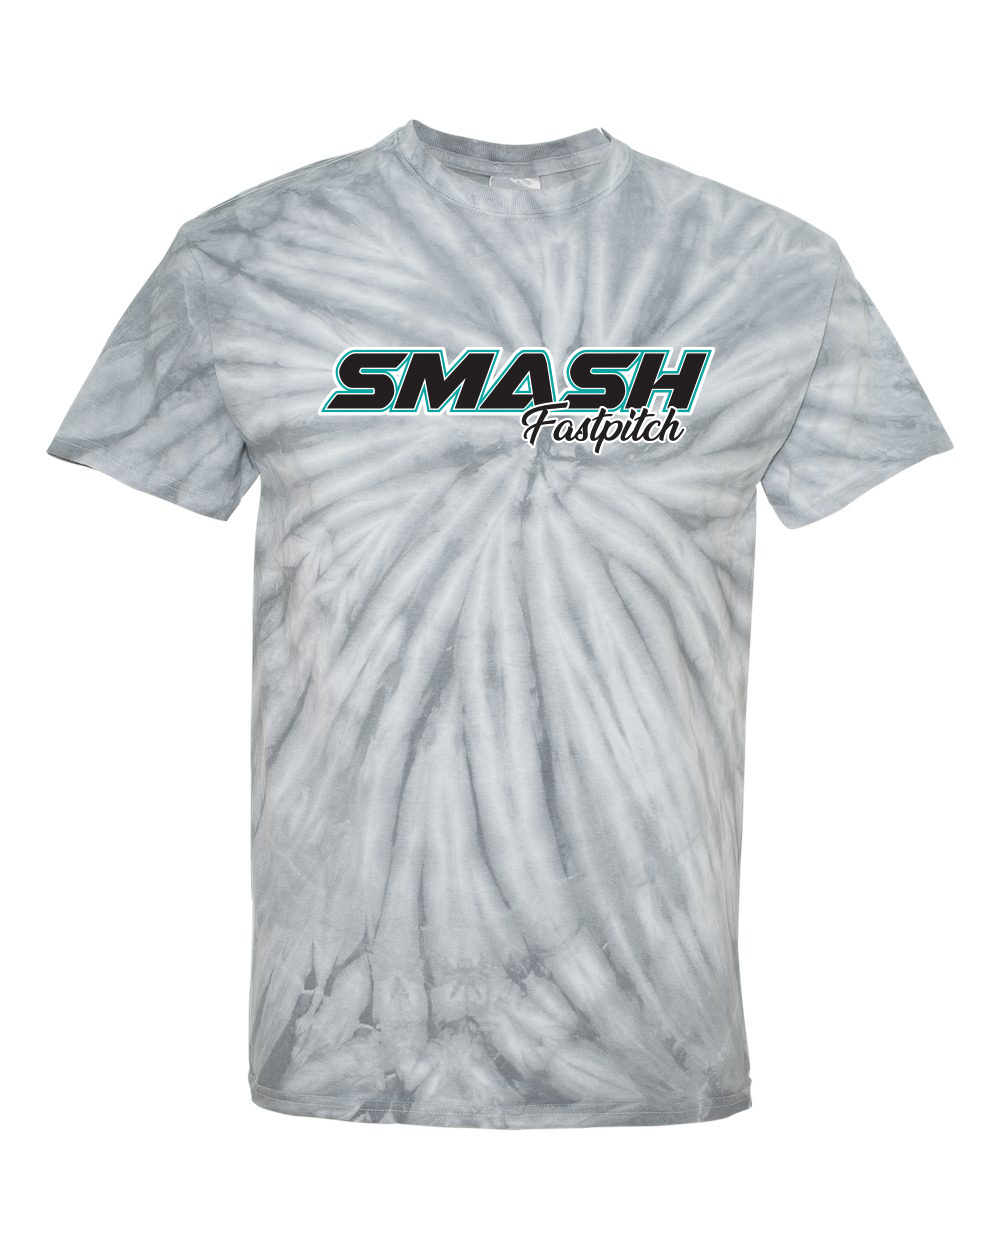 SMASH Cyclone Pinwheel Tie-Dyed T-Shirt